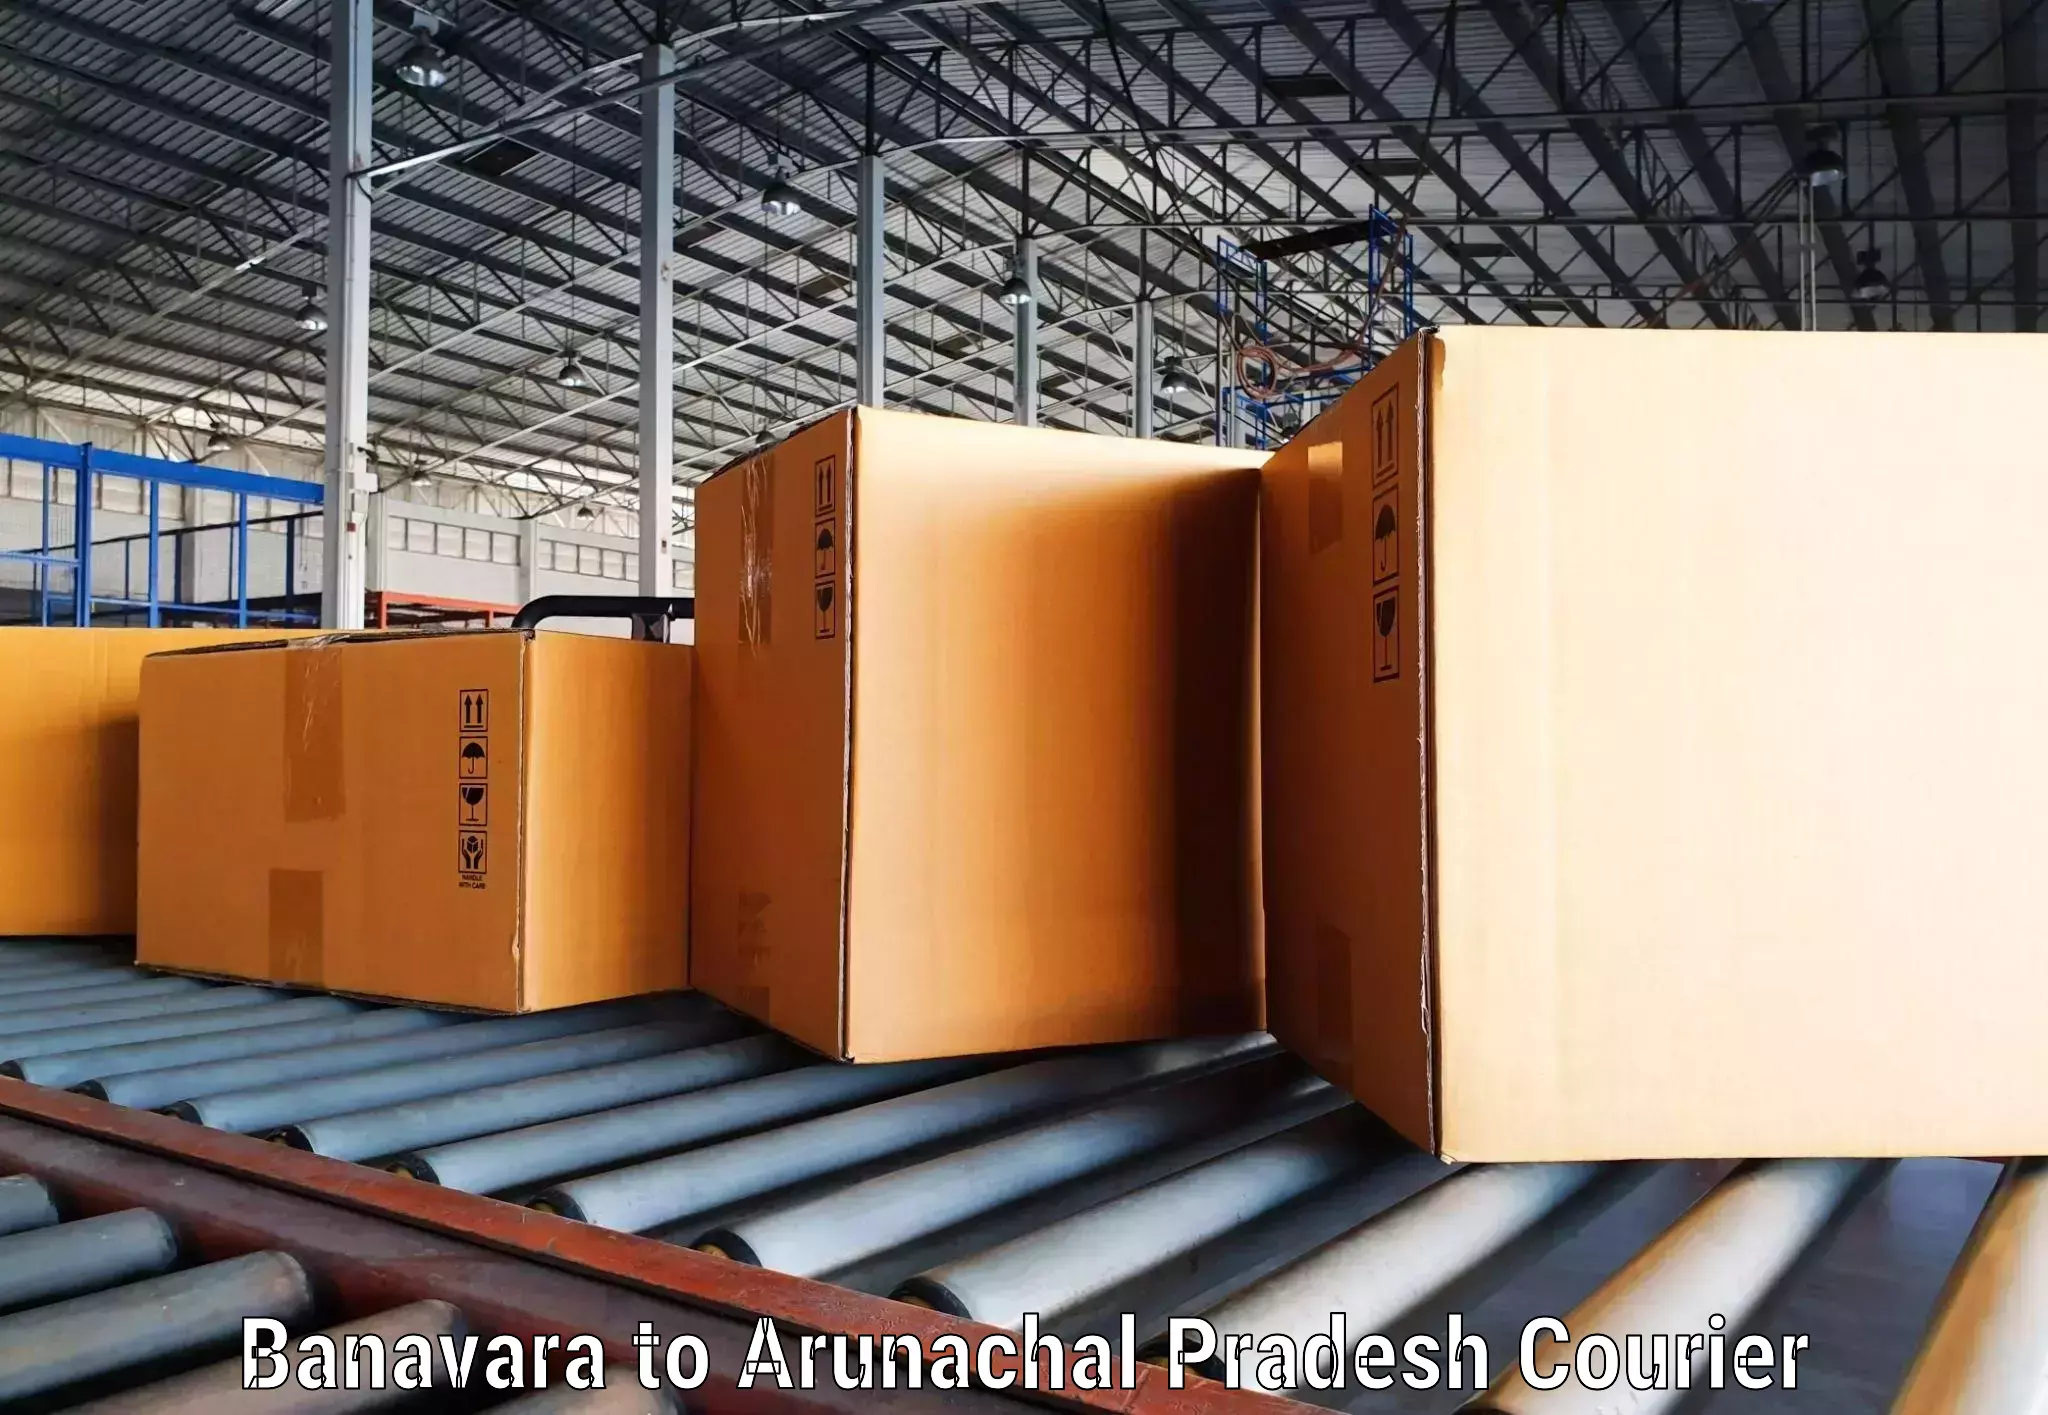 Nationwide shipping capabilities Banavara to Basar